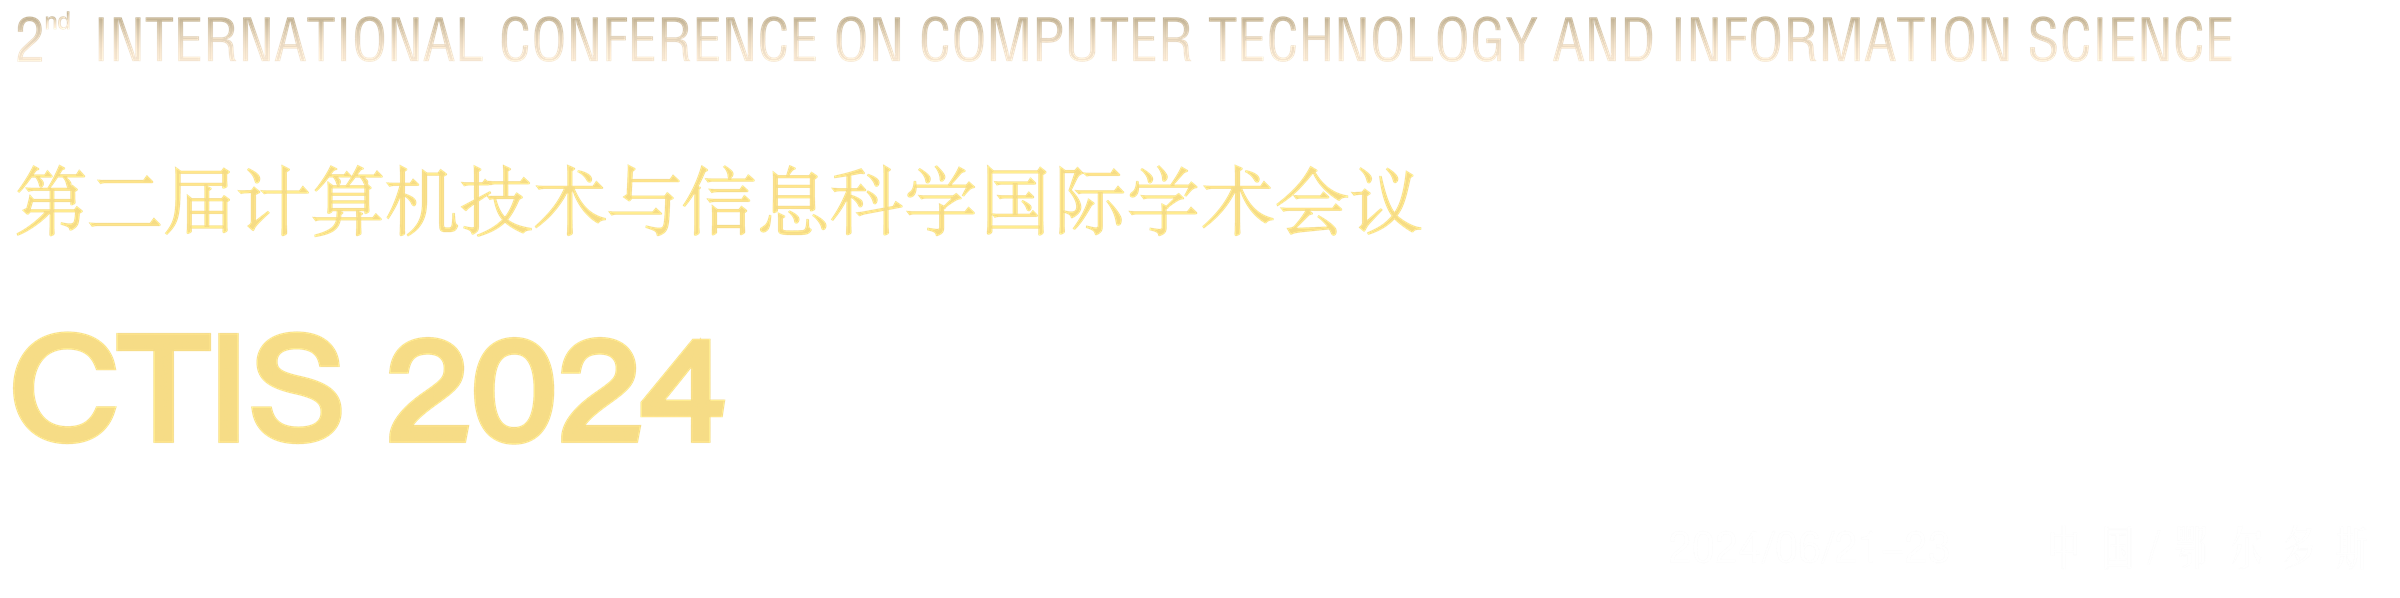 第二届计算机技术与信息科学国际学术会议（CTIS 2024） - 2024/06/21-23 中国鄂尔多斯